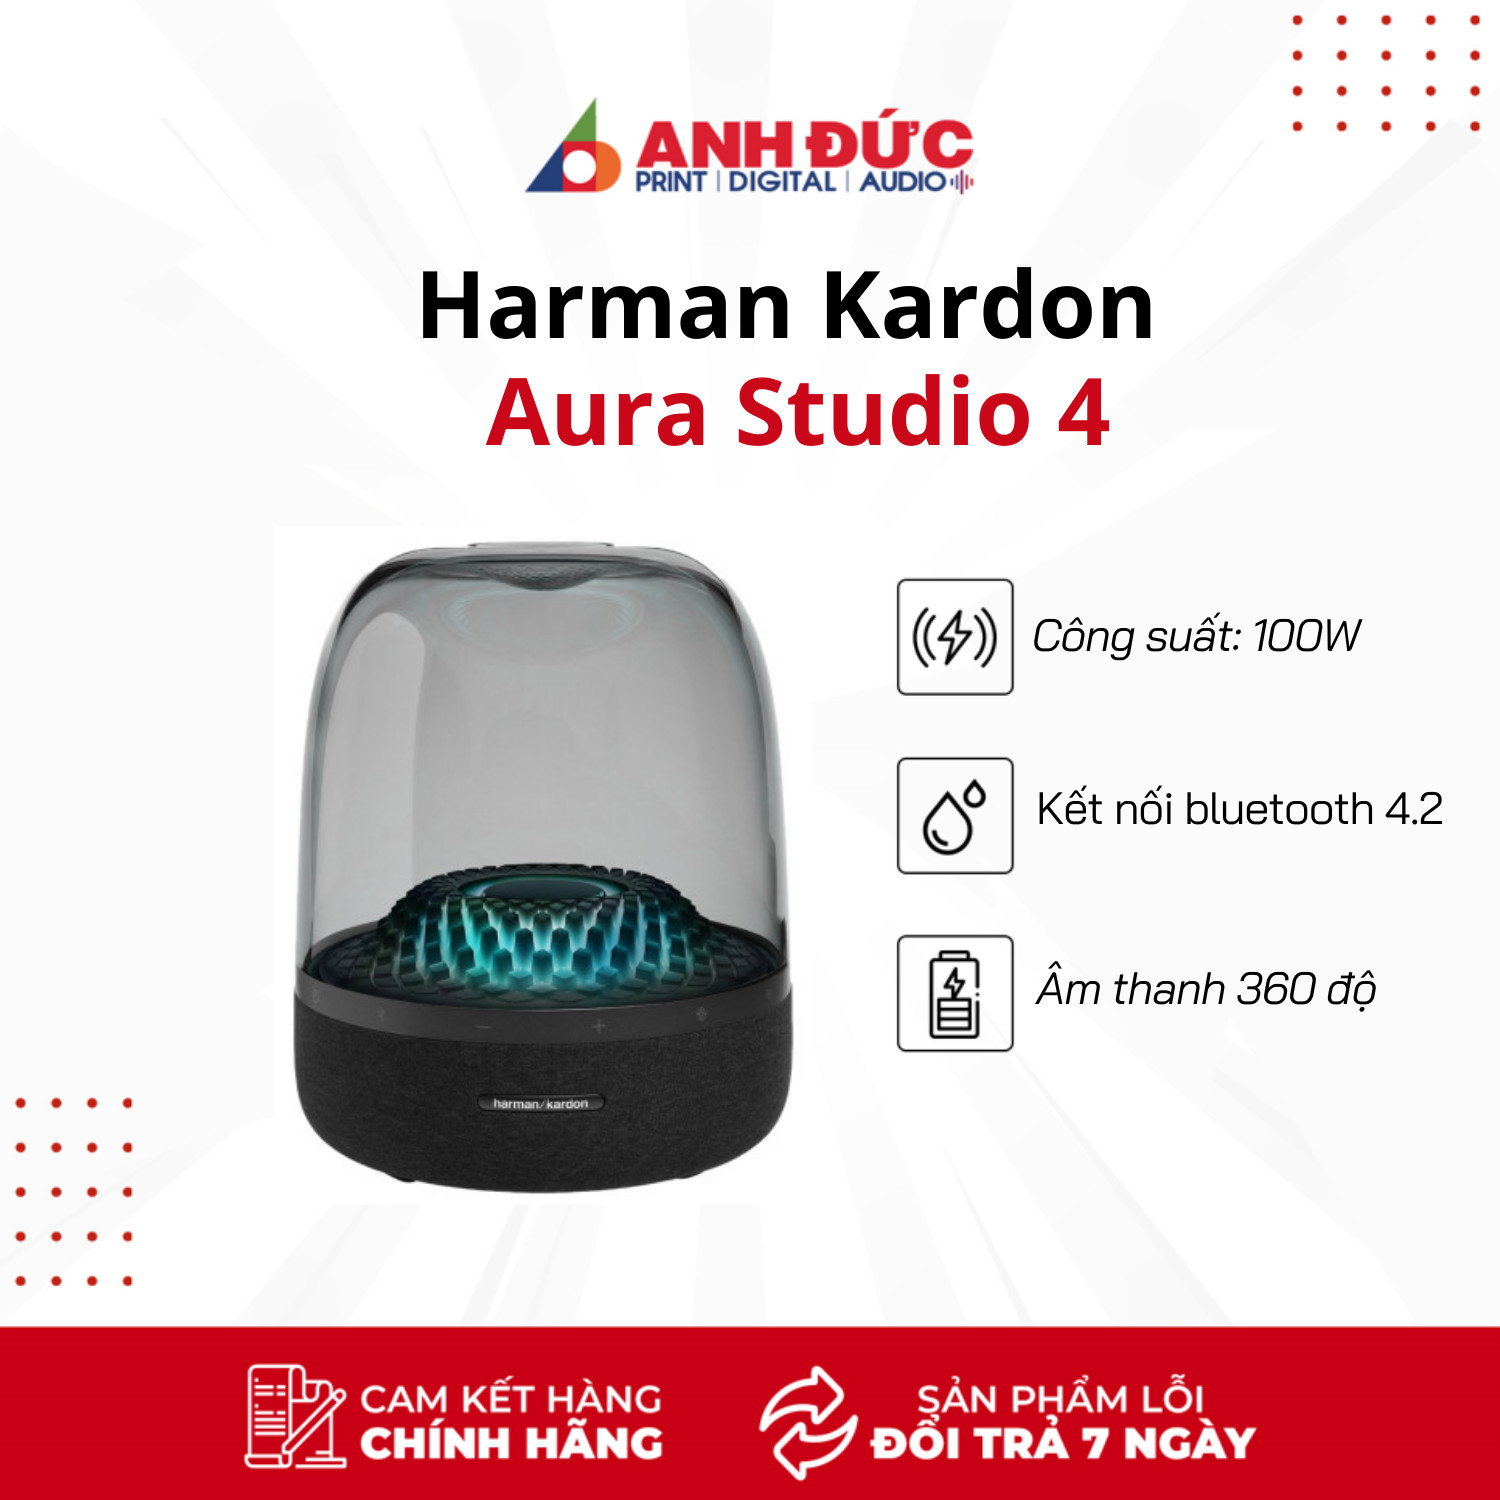 Loa Harman Kardon Aura Studio 4 - Hàng Chính Hãng PGI